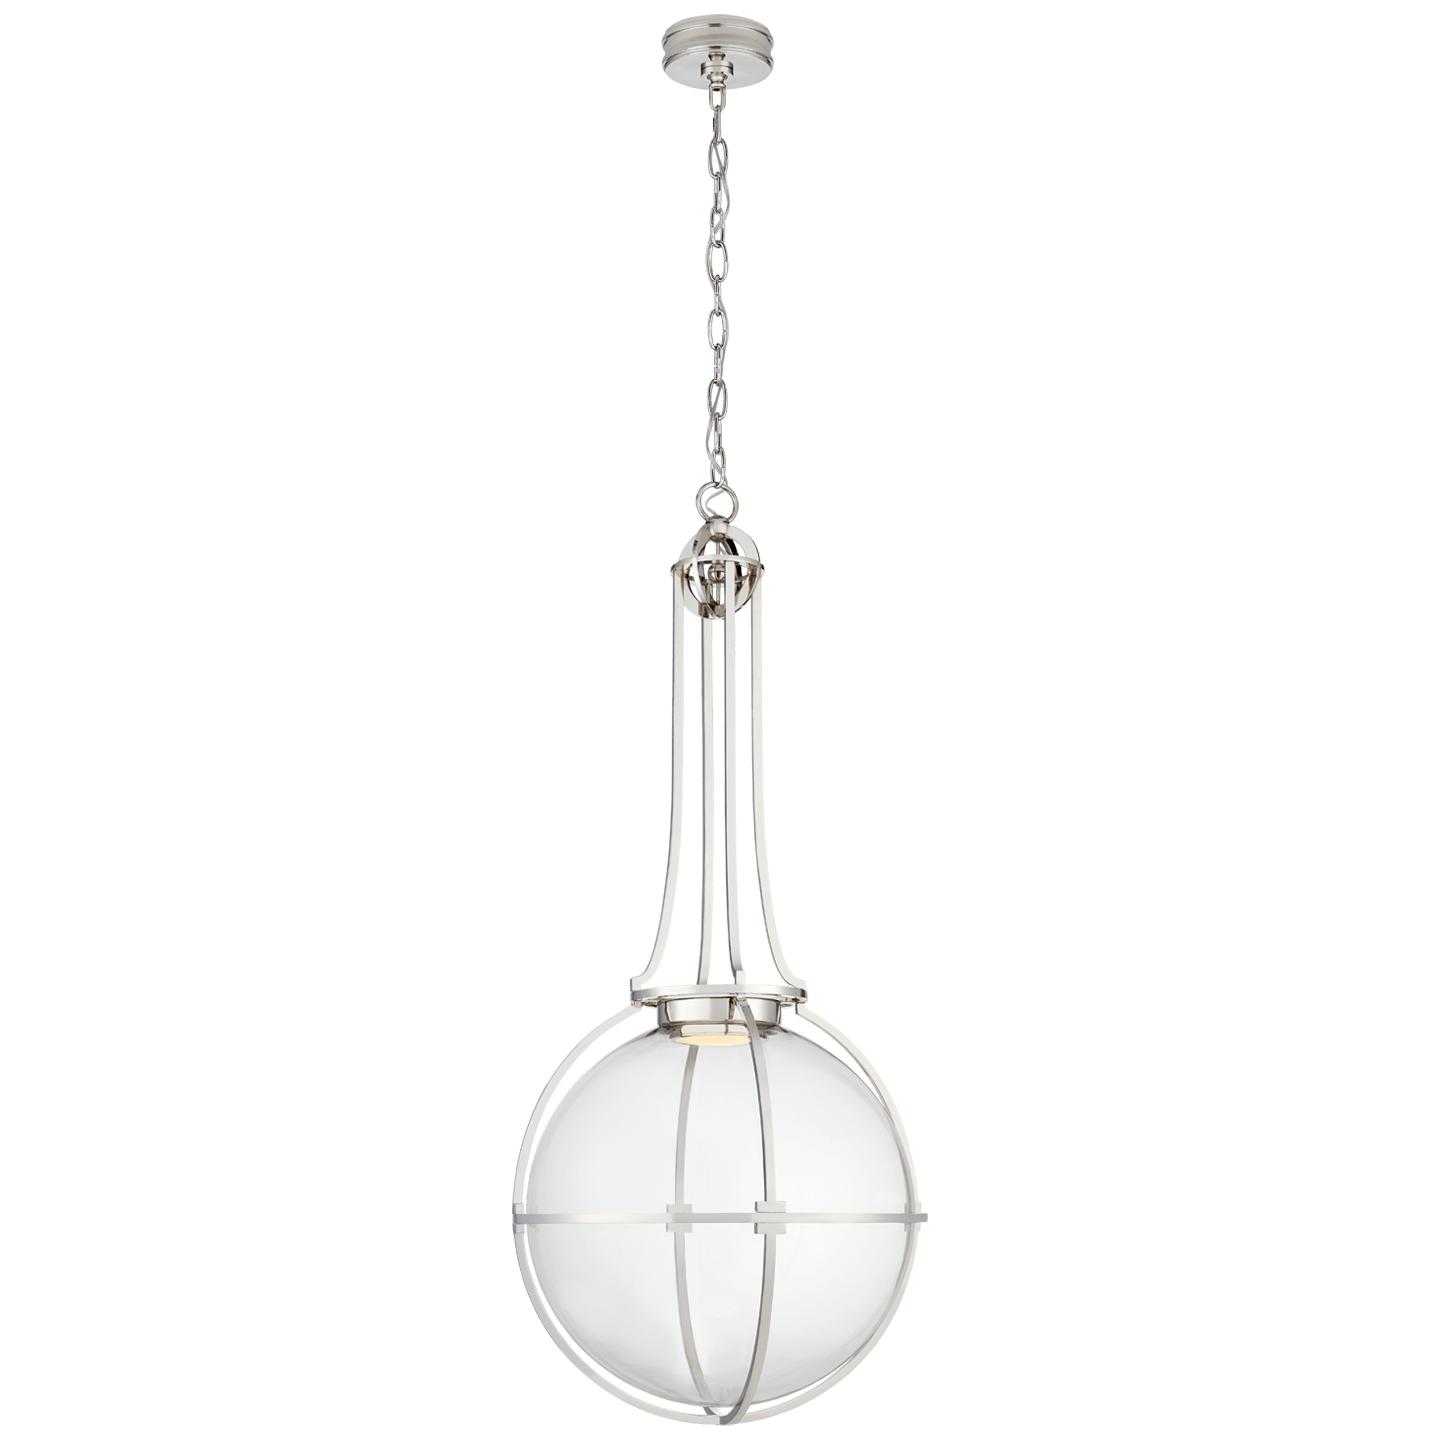 Купить Подвесной светильник Gracie Grande Captured Globe Pendant в интернет-магазине roooms.ru